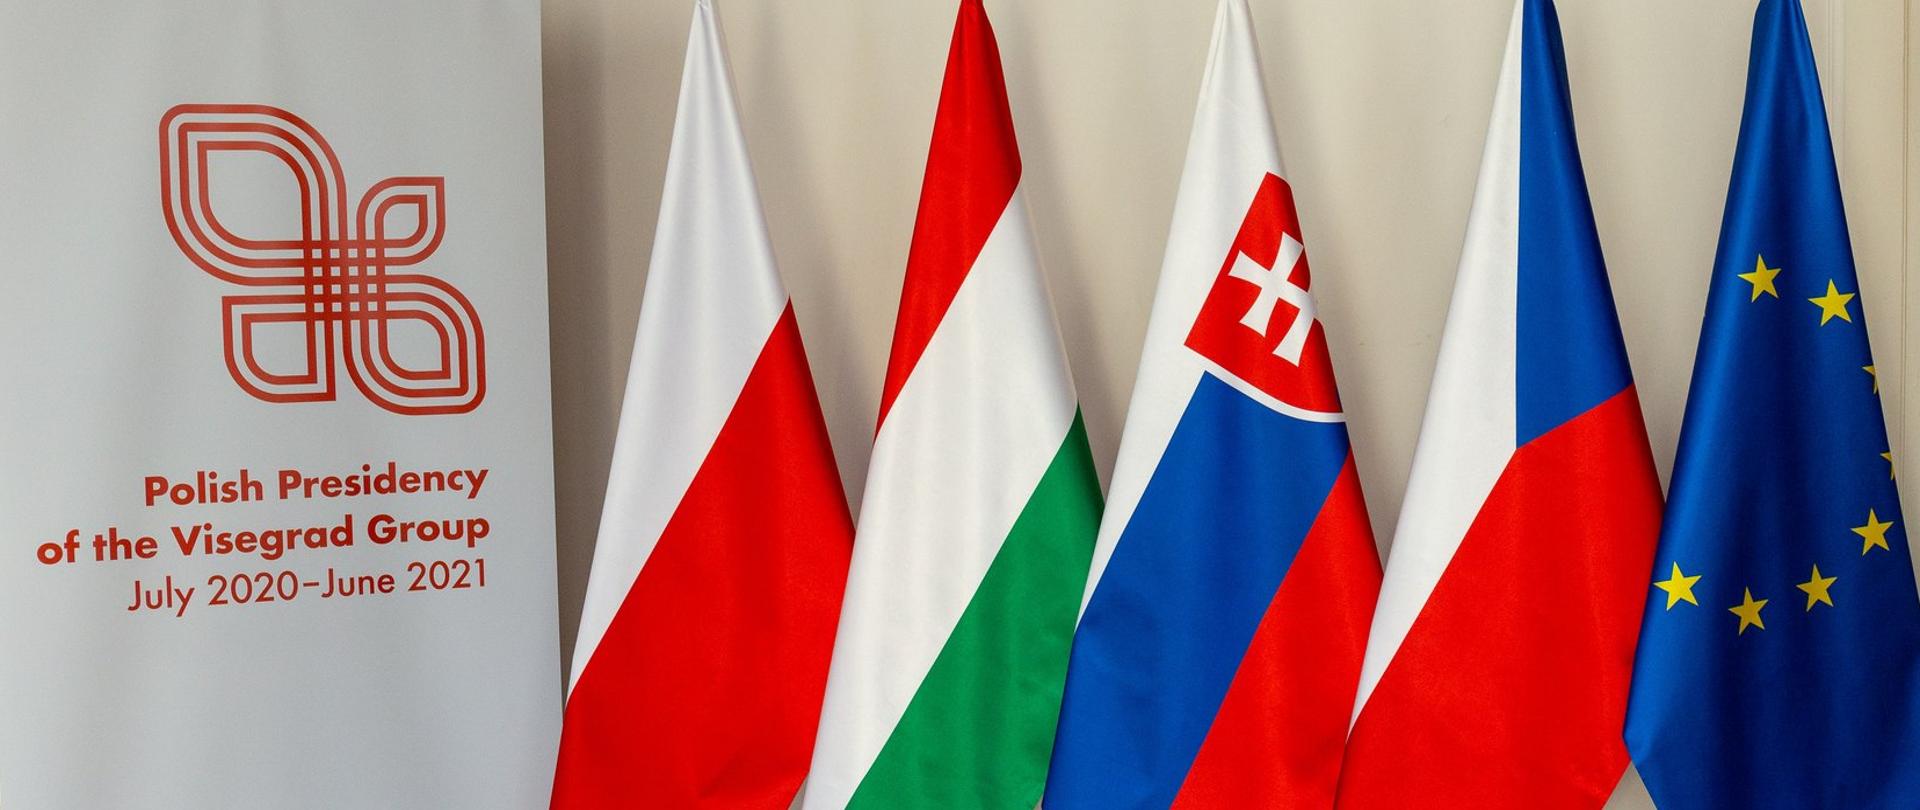 Flagi państw Grupy Wyszehradzkiej - Węgier, Słowacji, Czech i Polski oraz flaga Unii Europejskiej